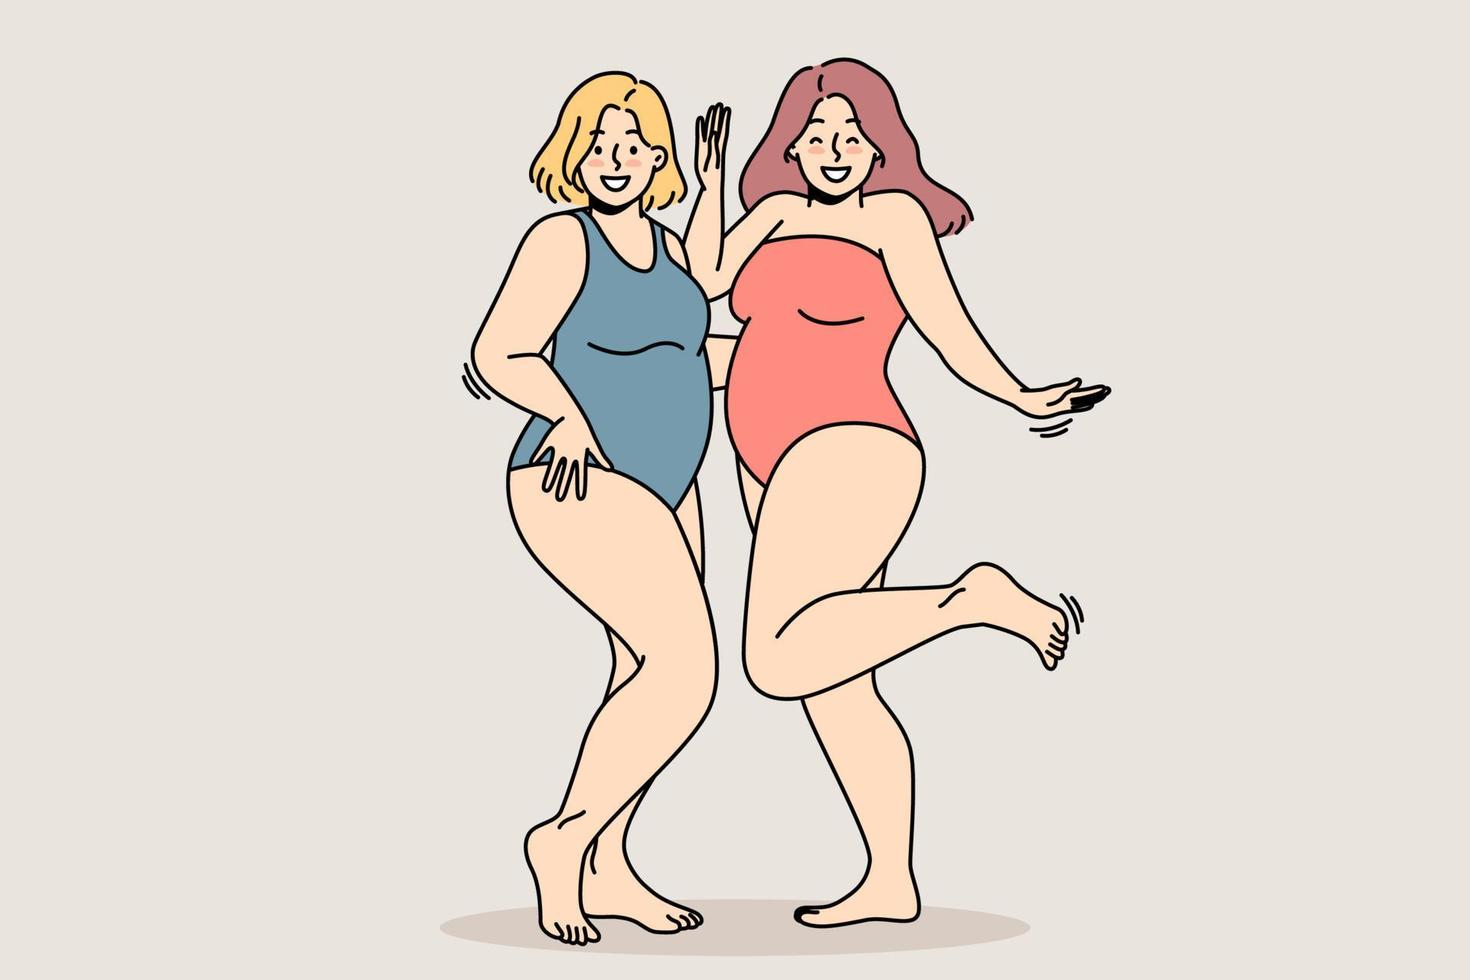 Mollige Mädchen in Badeanzügen stehen nebeneinander, lächeln, erfreuen sich an ihren Figuren. Körper positives Konzept. Dicke junge Frauen akzeptieren ihre Formen. Plus-Size-Damen lachen. vektor isolierte illustration.